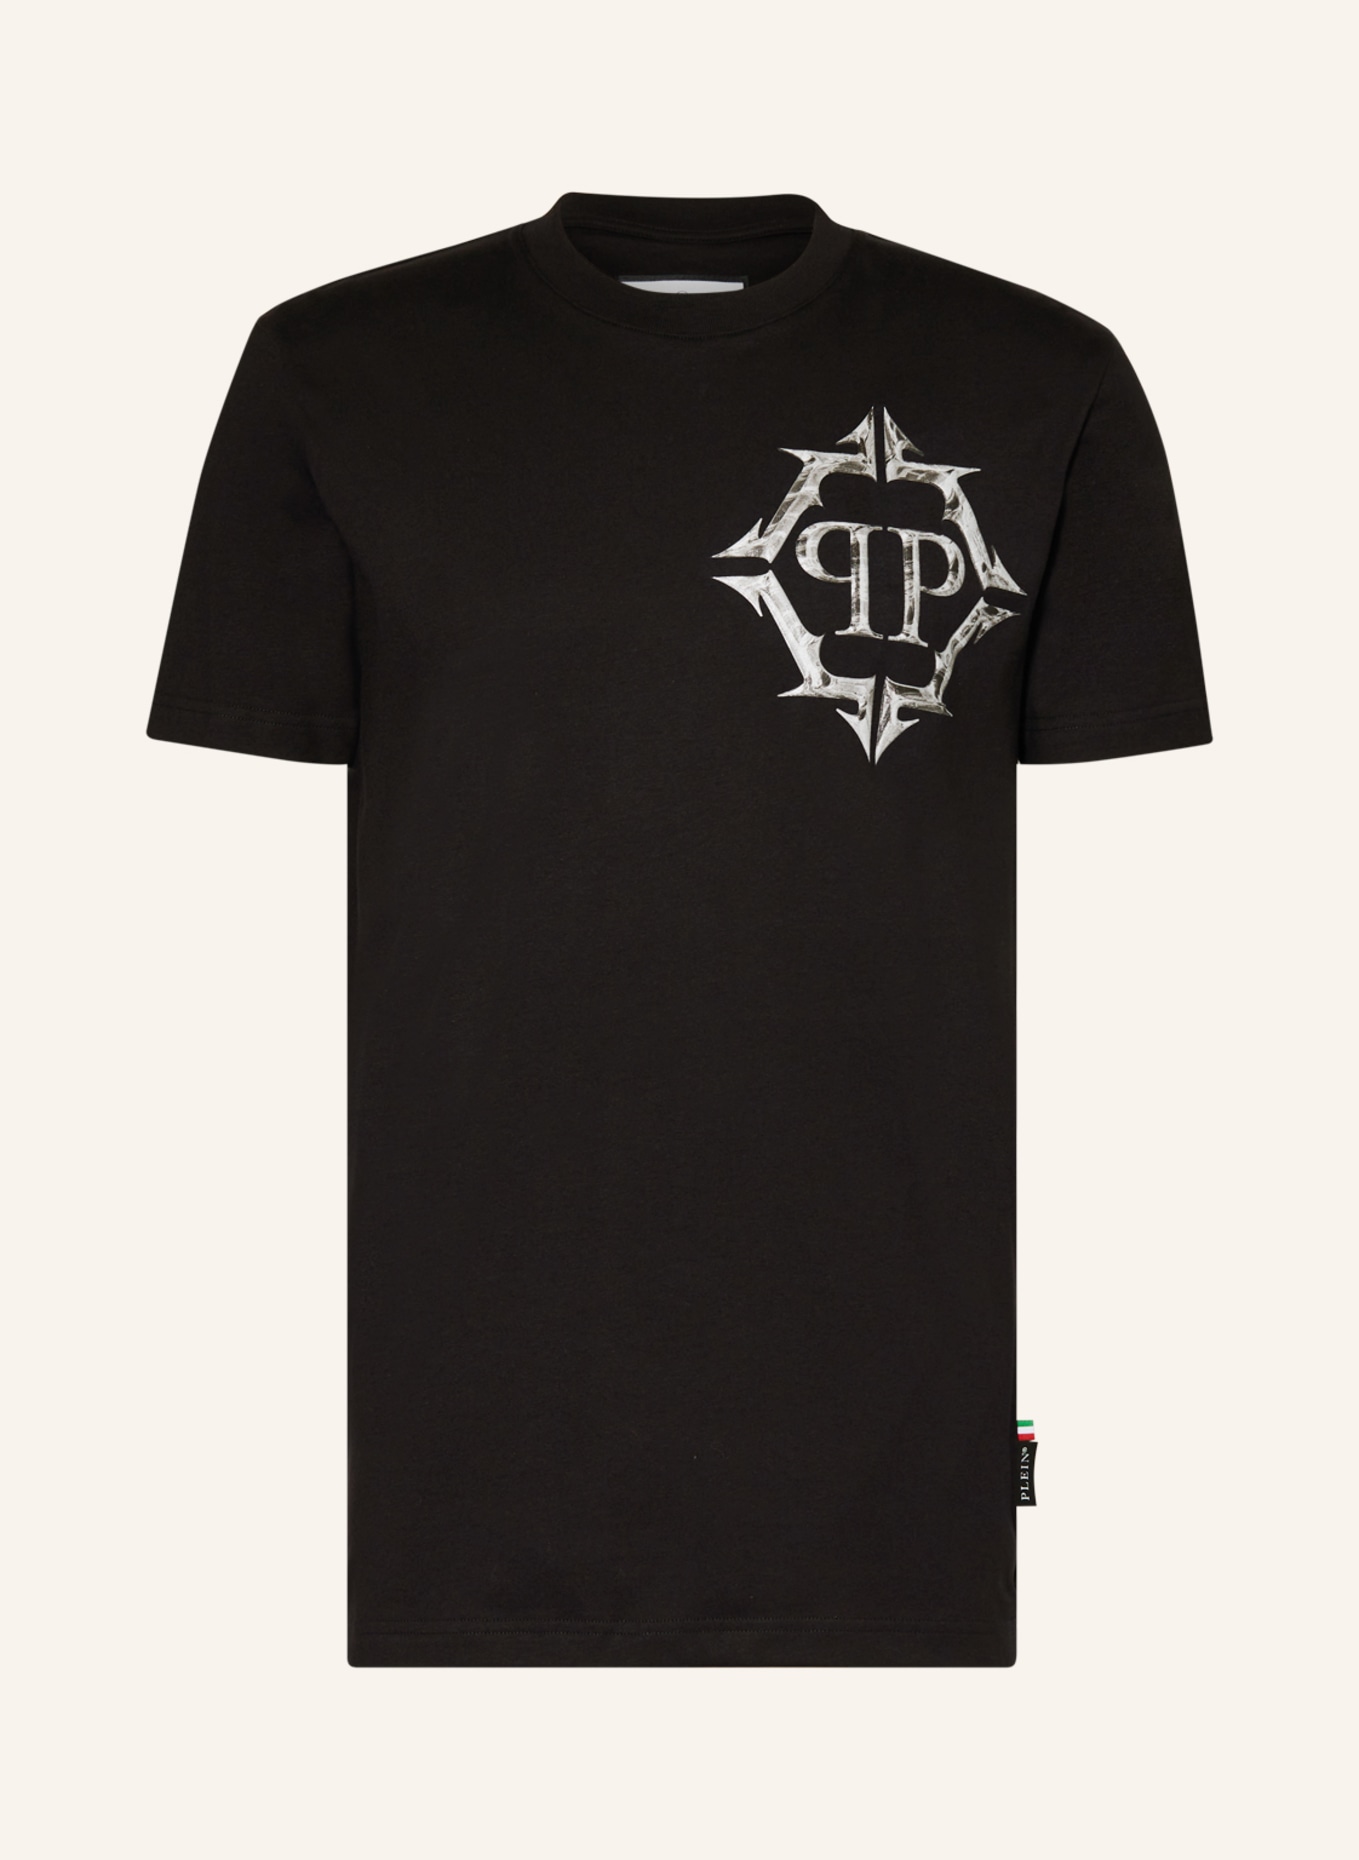 PHILIPP PLEIN T-Shirt, Farbe: SCHWARZ (Bild 1)